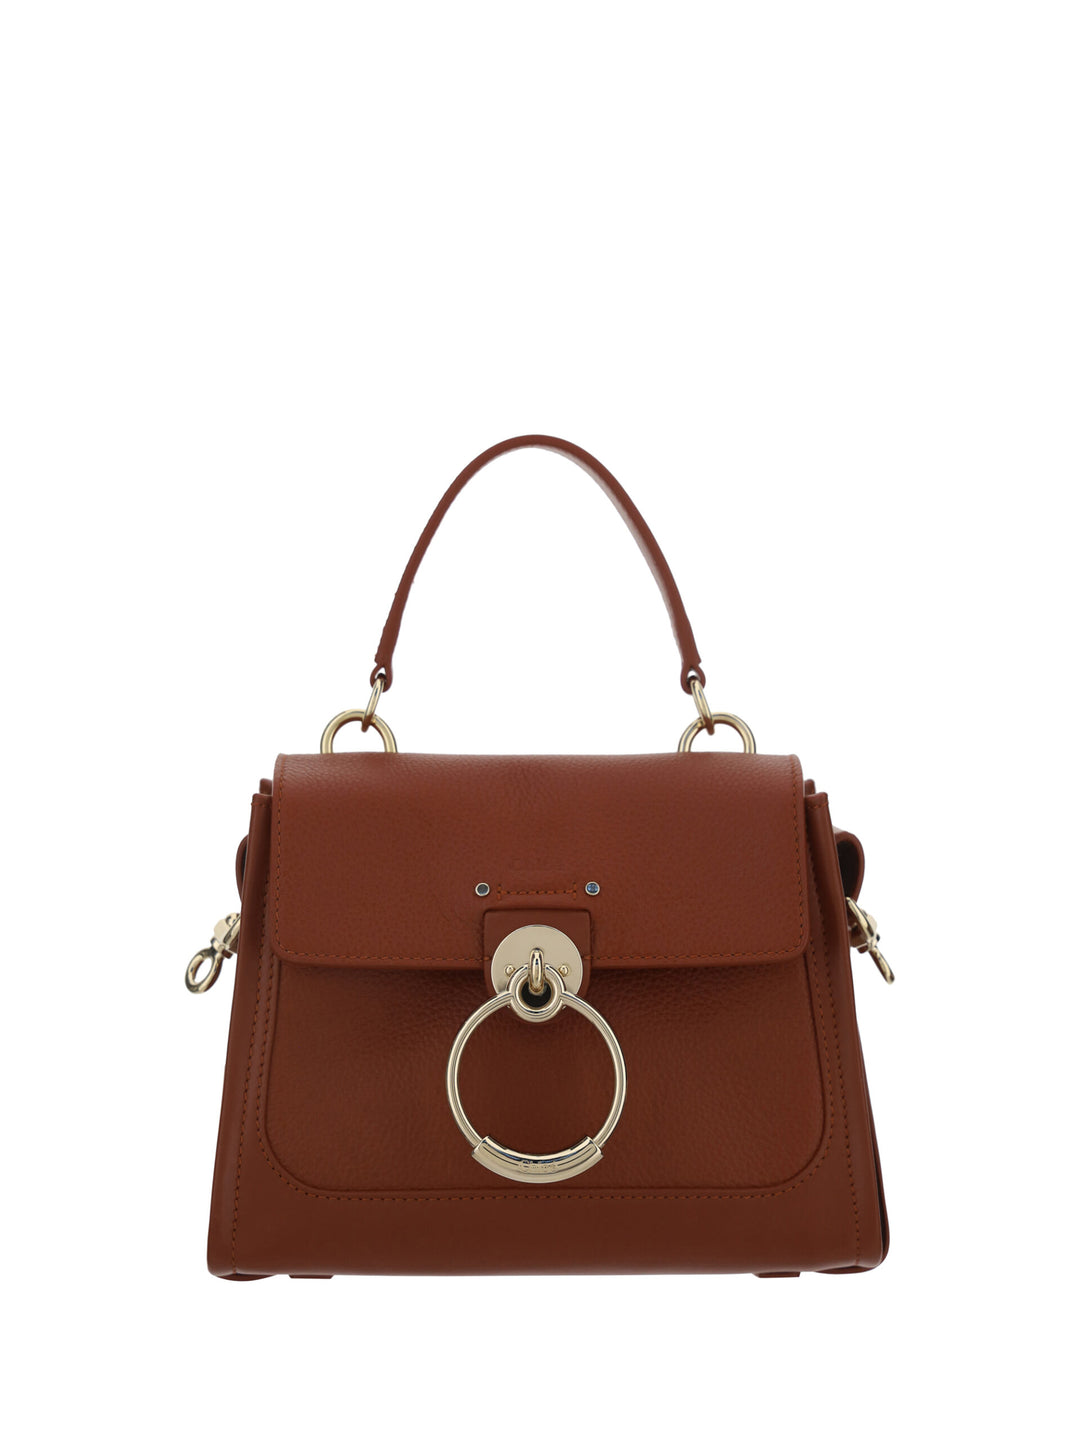 Chloé Brown Calf Leather Tess Handbag